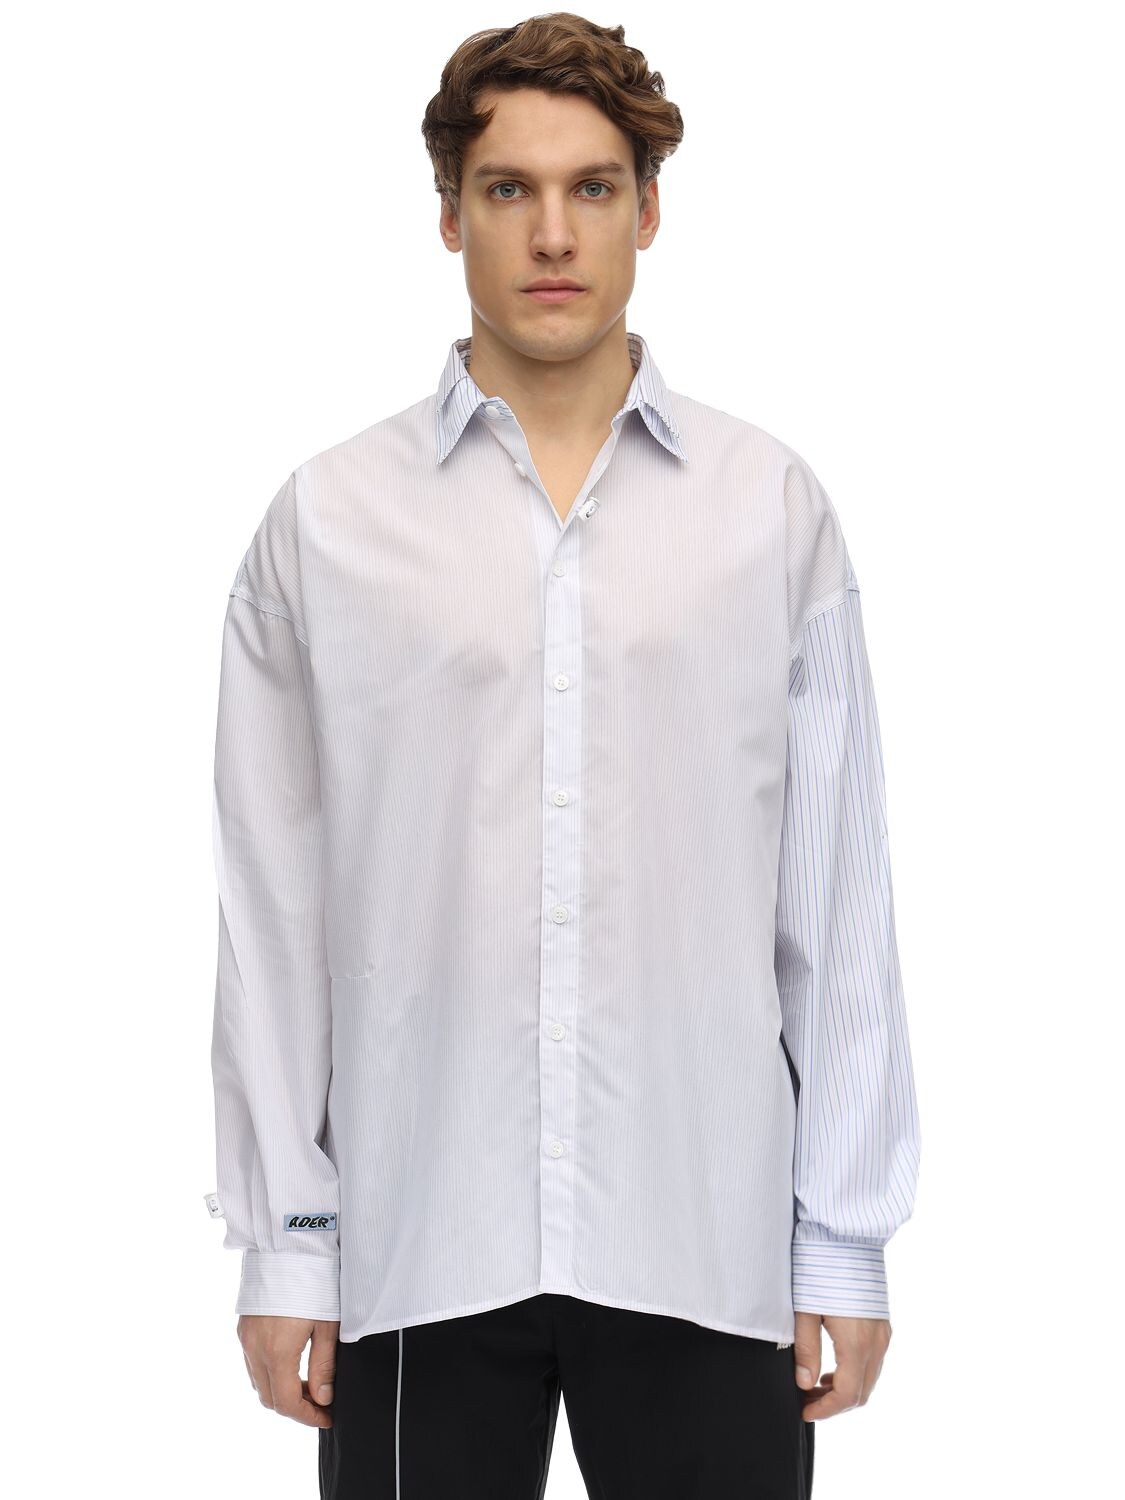 Ader Error Double Collar Cotton Poplin Shirt In White